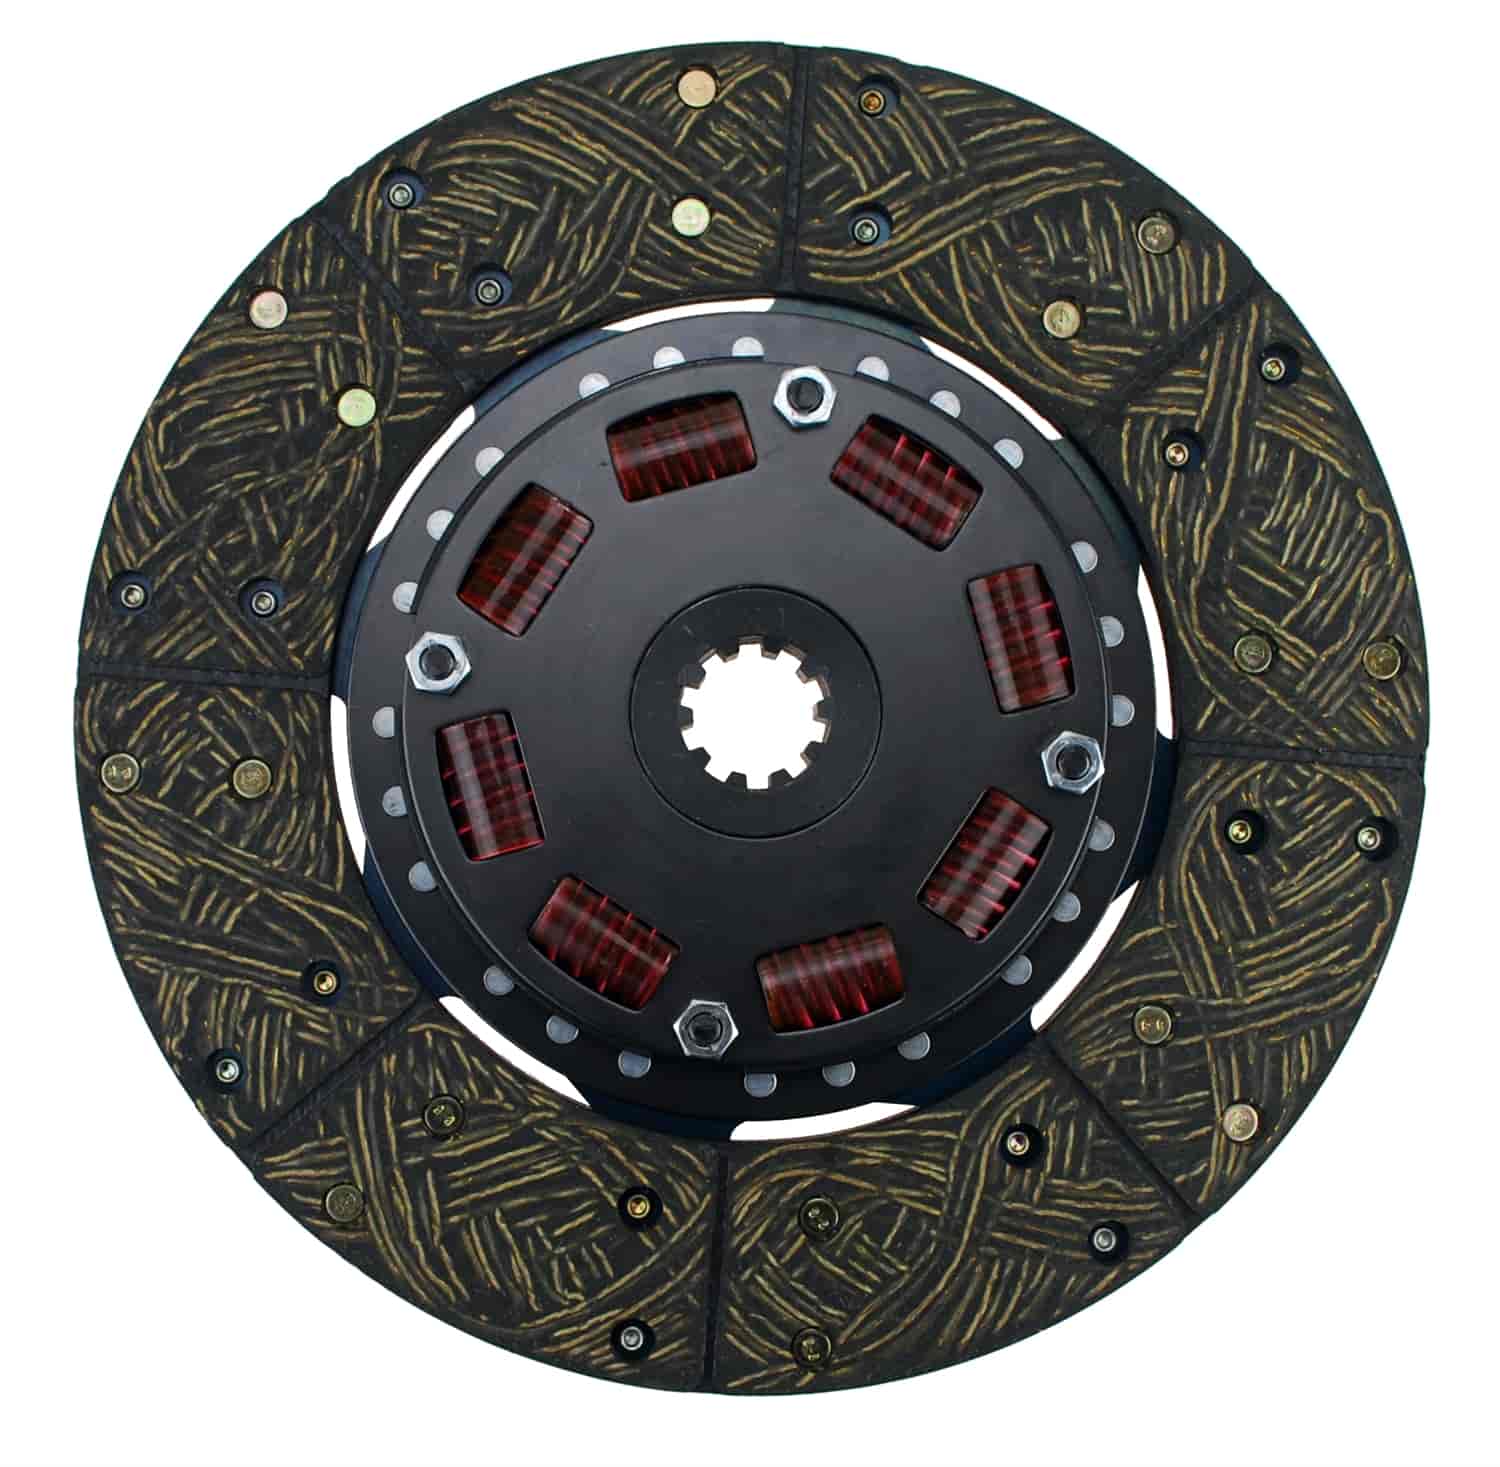 300 Series Sprung Center Clutch Disc 10-1/2" Diameter